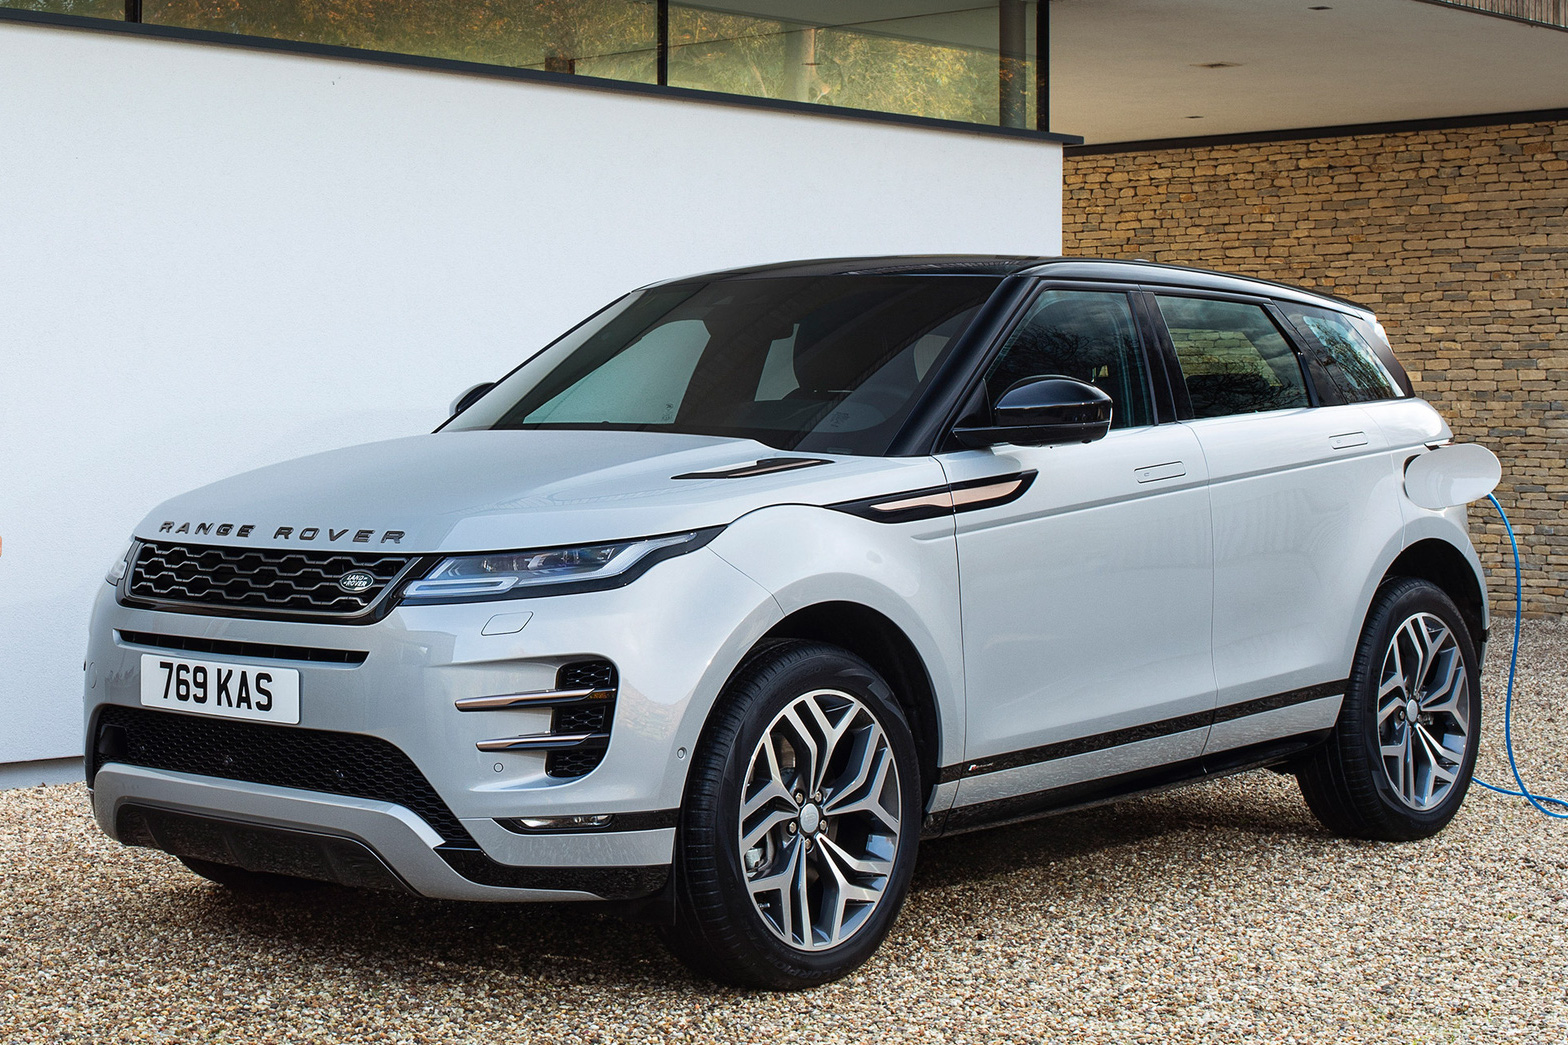 Ra mắt Discovery Sport và Range Rover Evoque phiên bản mới siêu tiết kiệm: 1,4 lít nhiên liệu mỗi 100km!